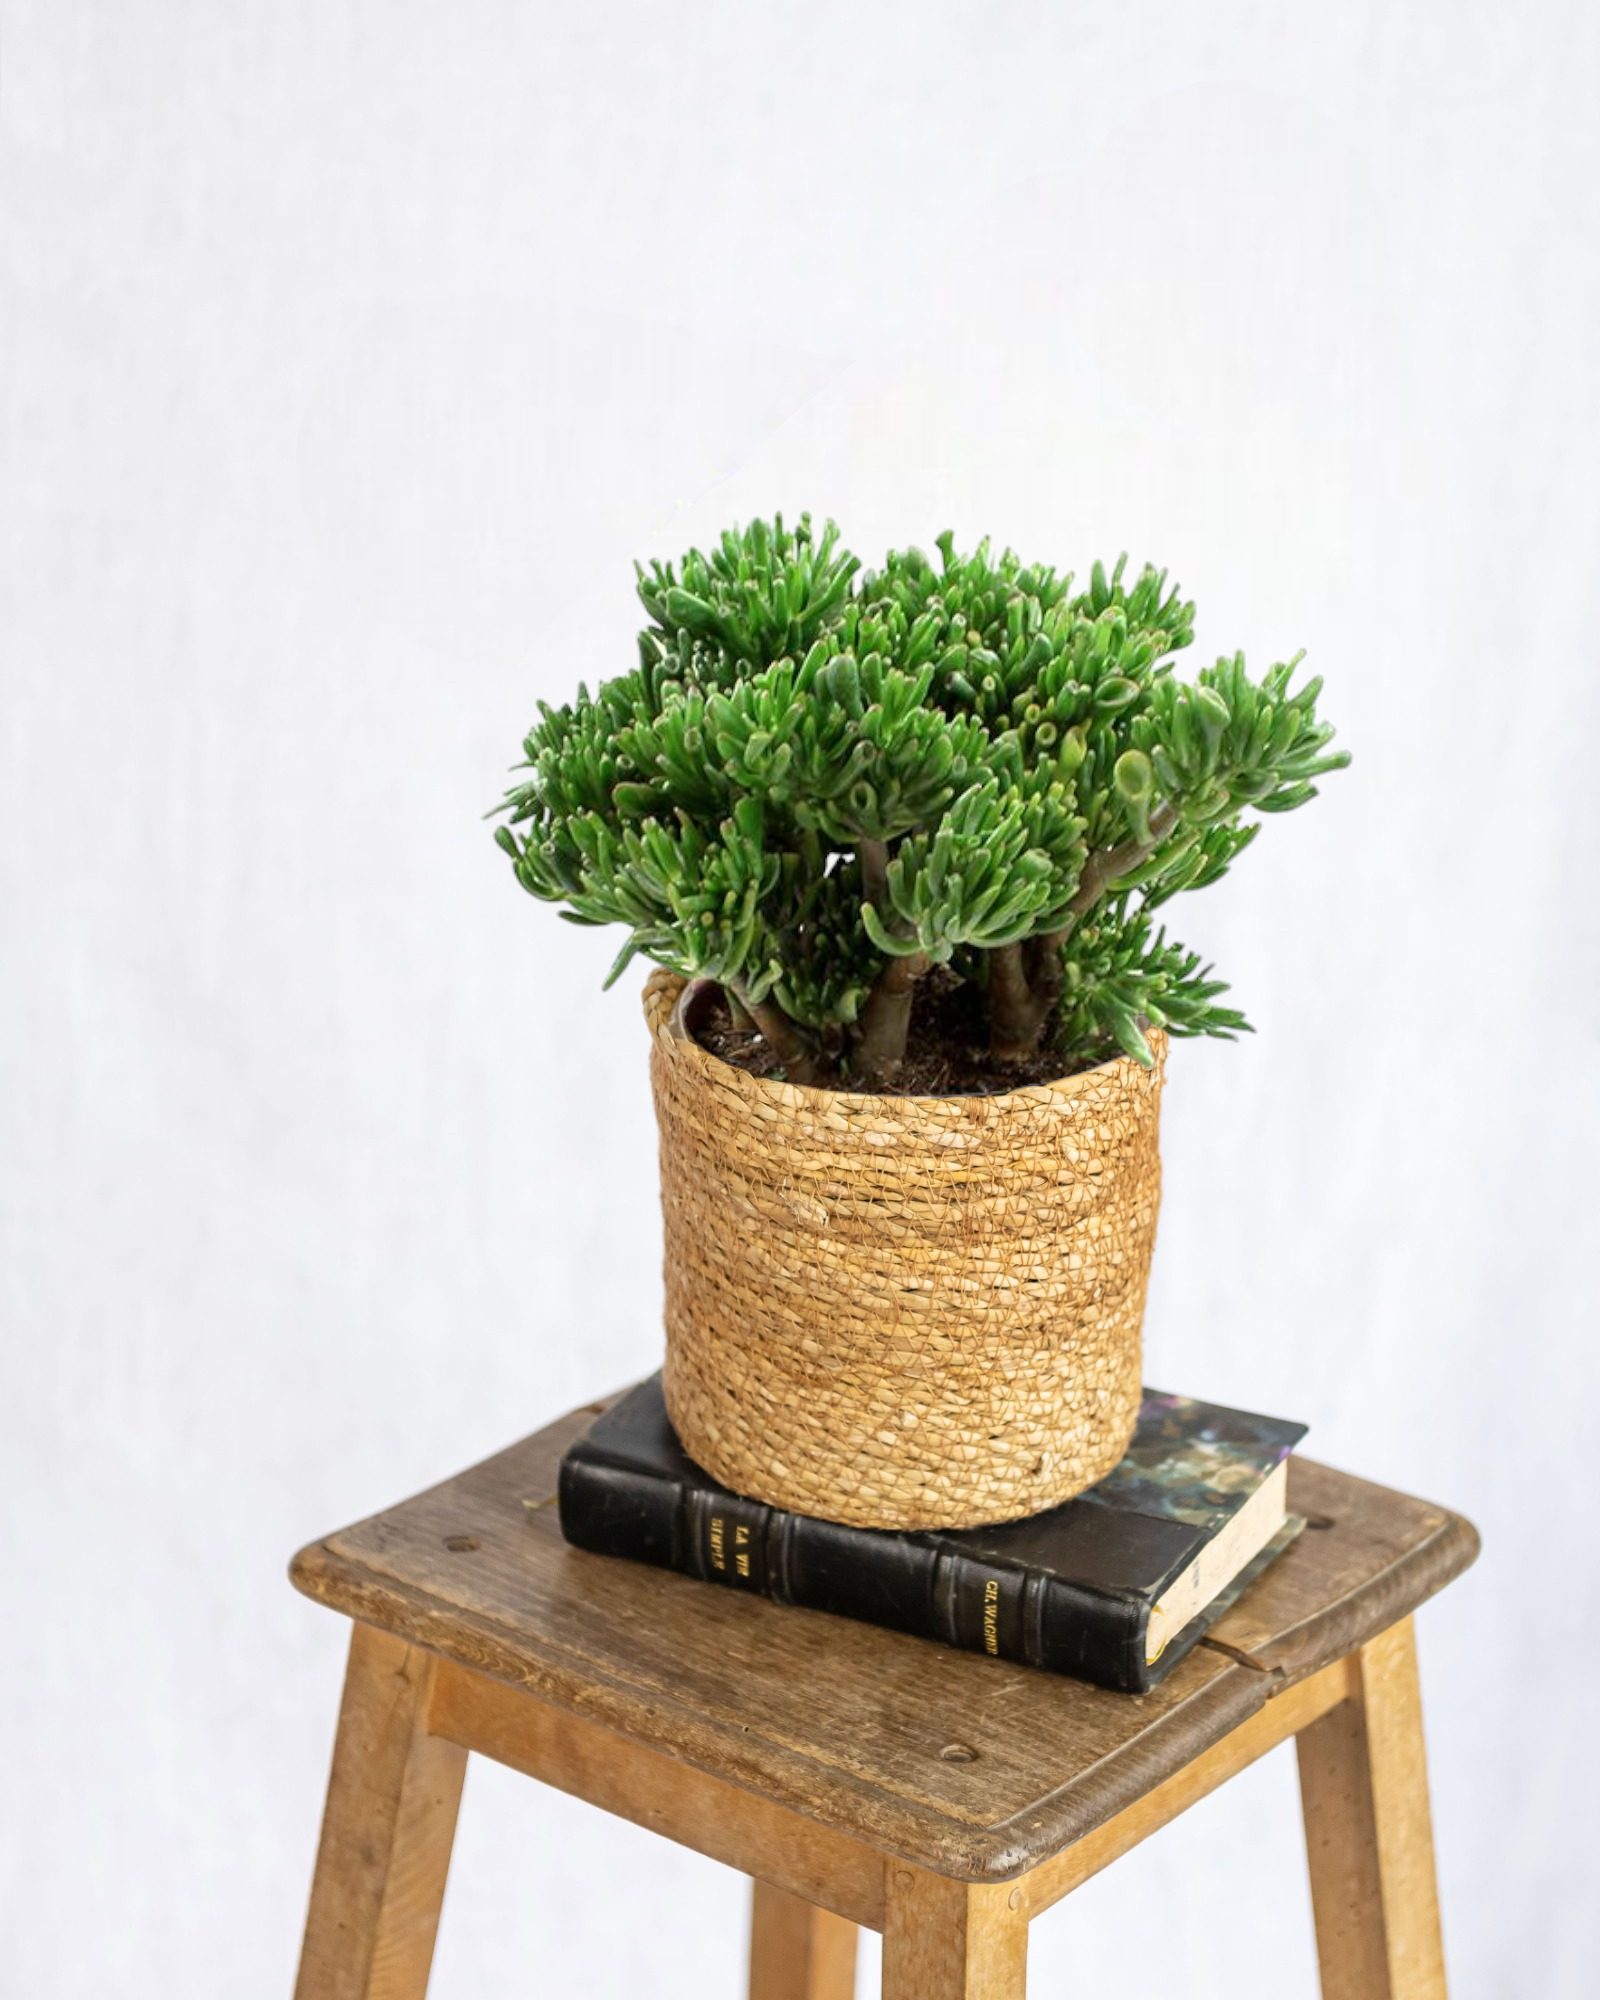 Crassula hobbit - plante grasse d'intérieur